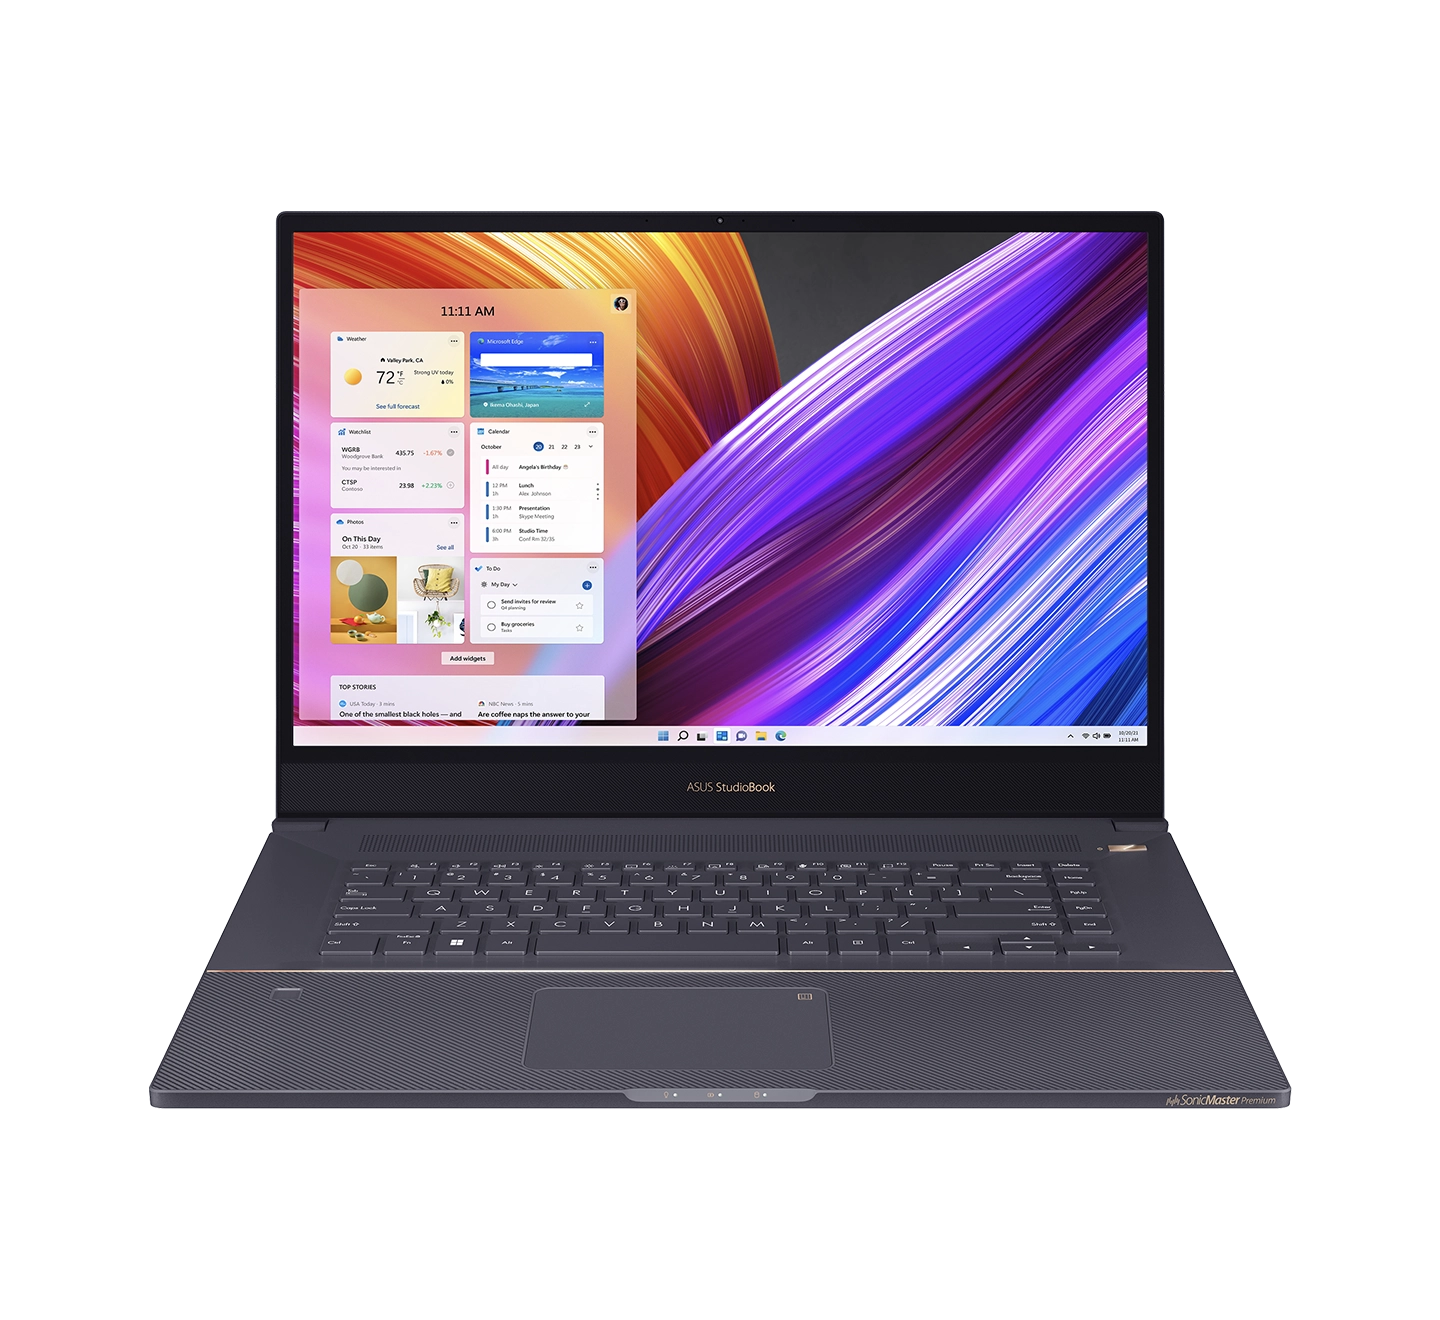 ProArt Studiobook Pro 17 W700 Laptop: Core i7 in UAE, Oman